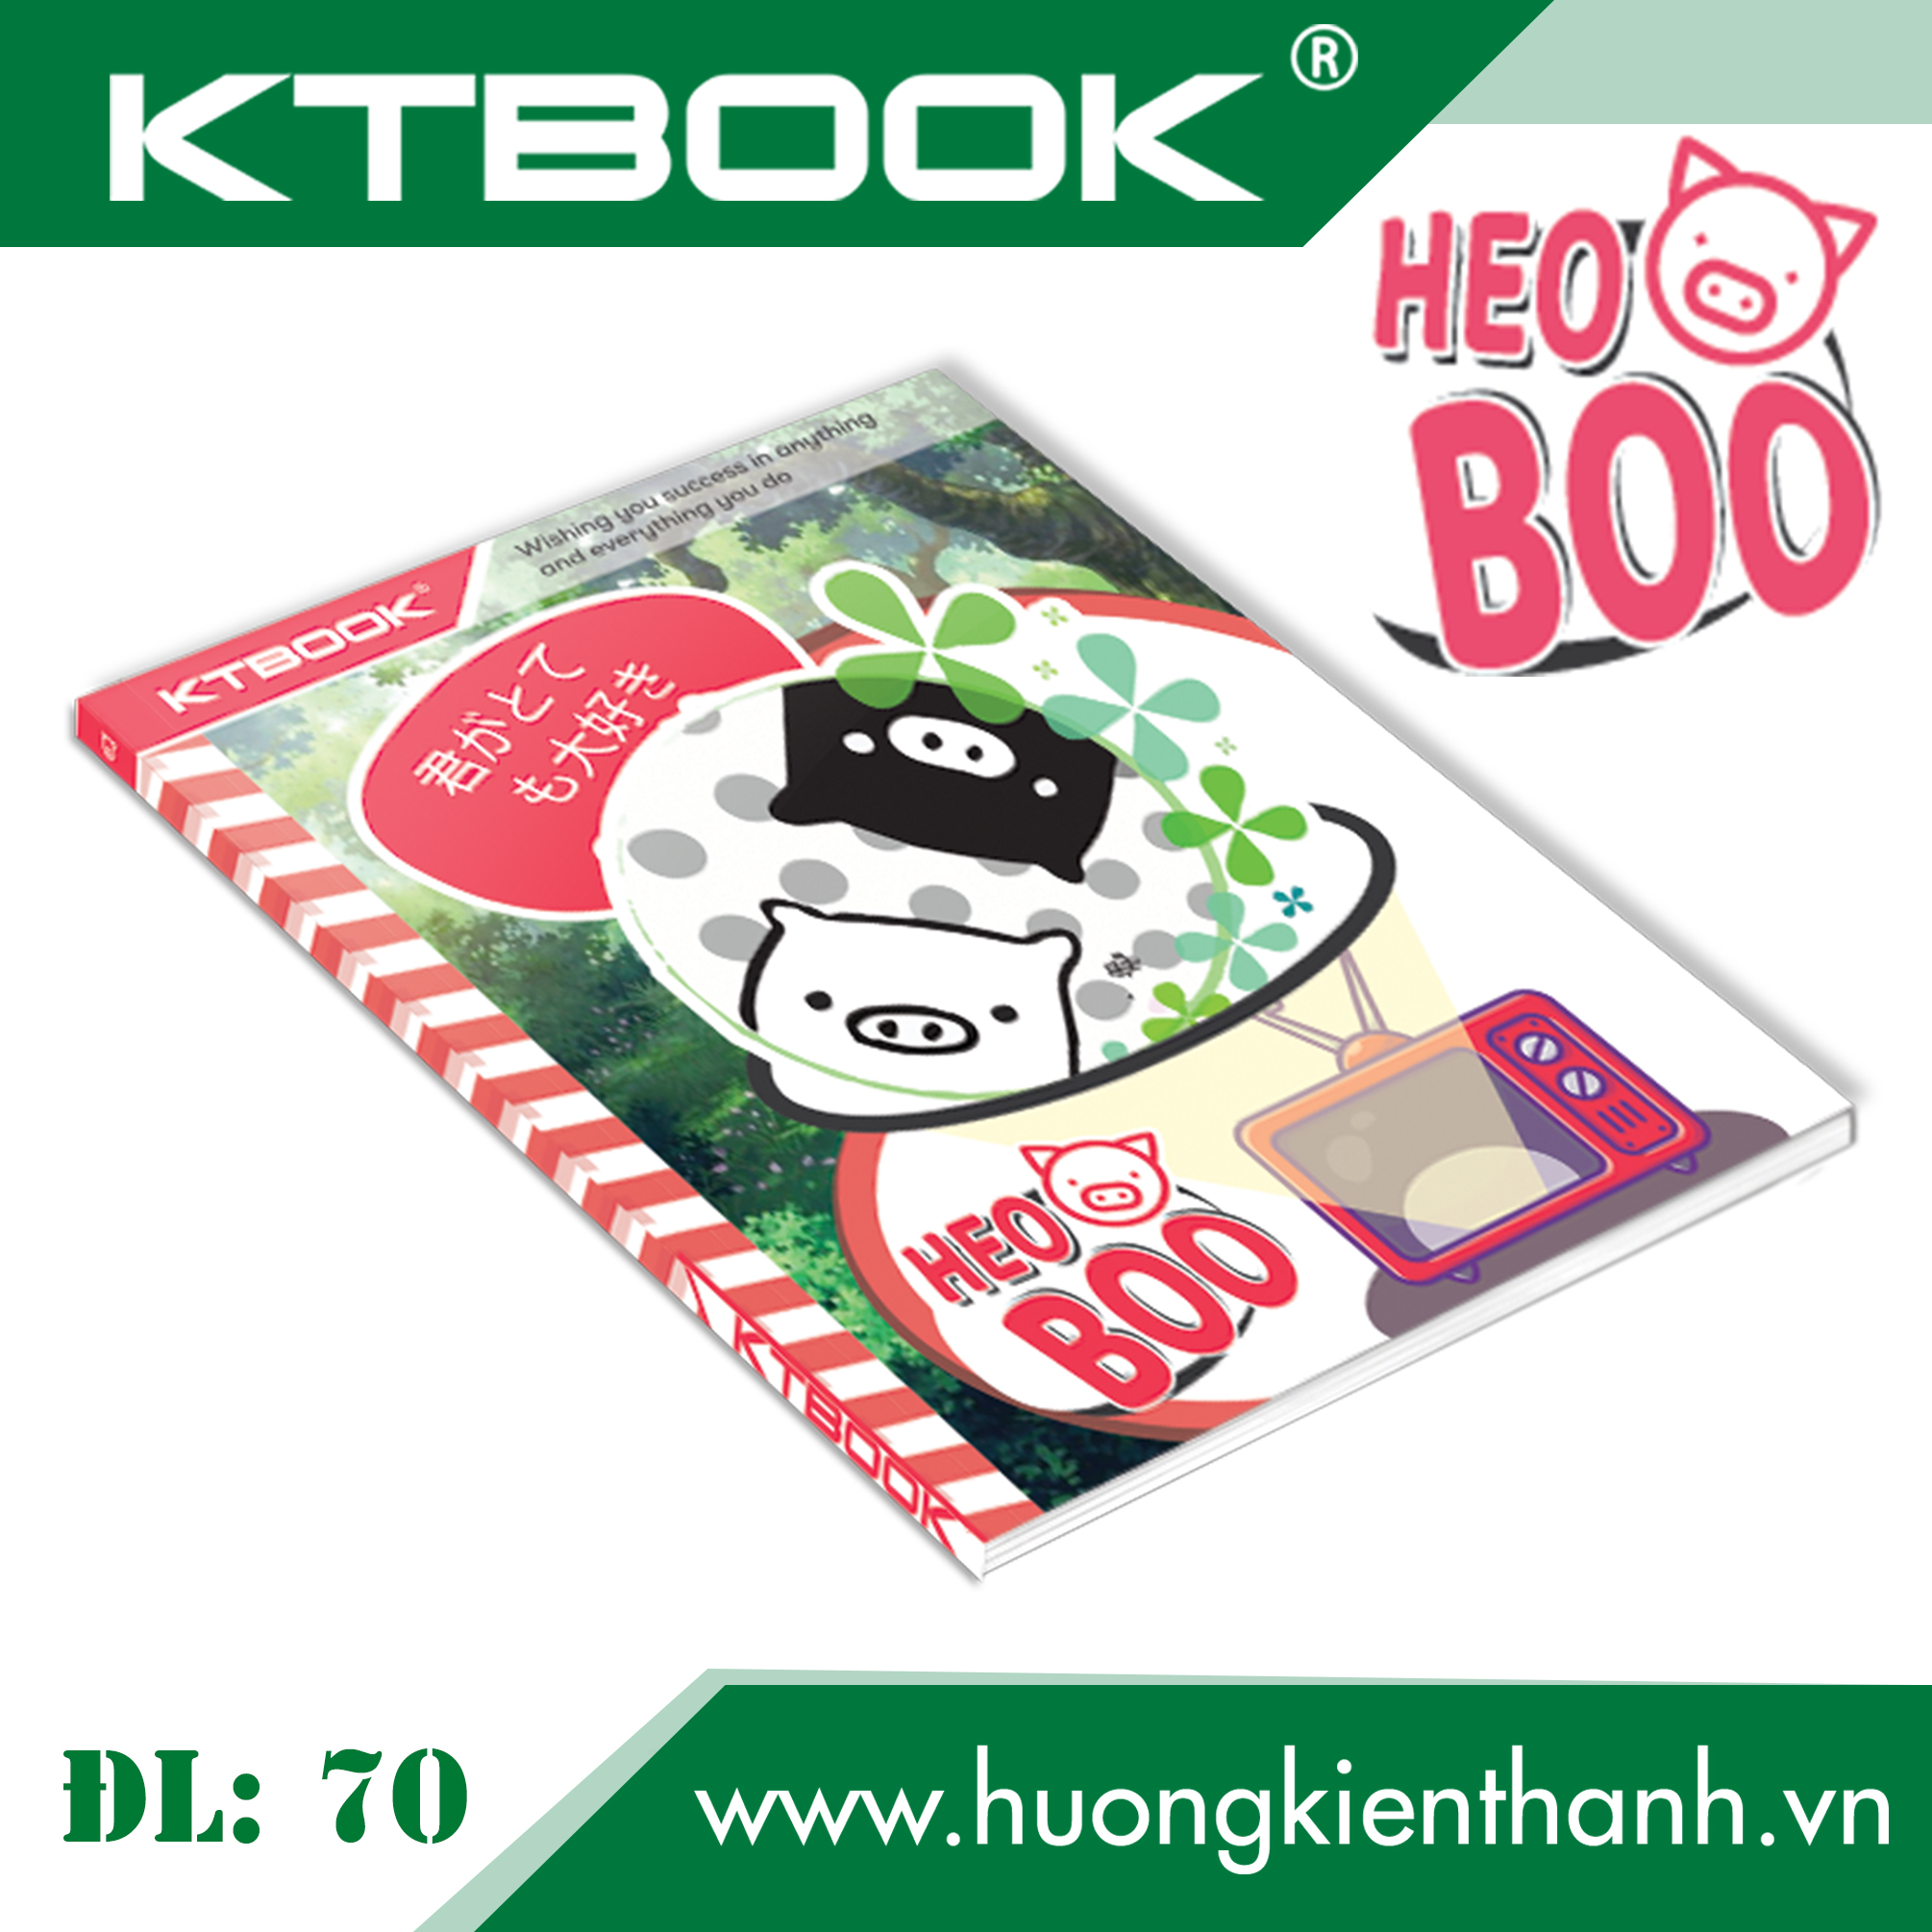 Gói 5 cuốn Tập học sinh cao cấp Heo Boo KTBOOK giấy trắng tốt ĐL 70 - 200 trang